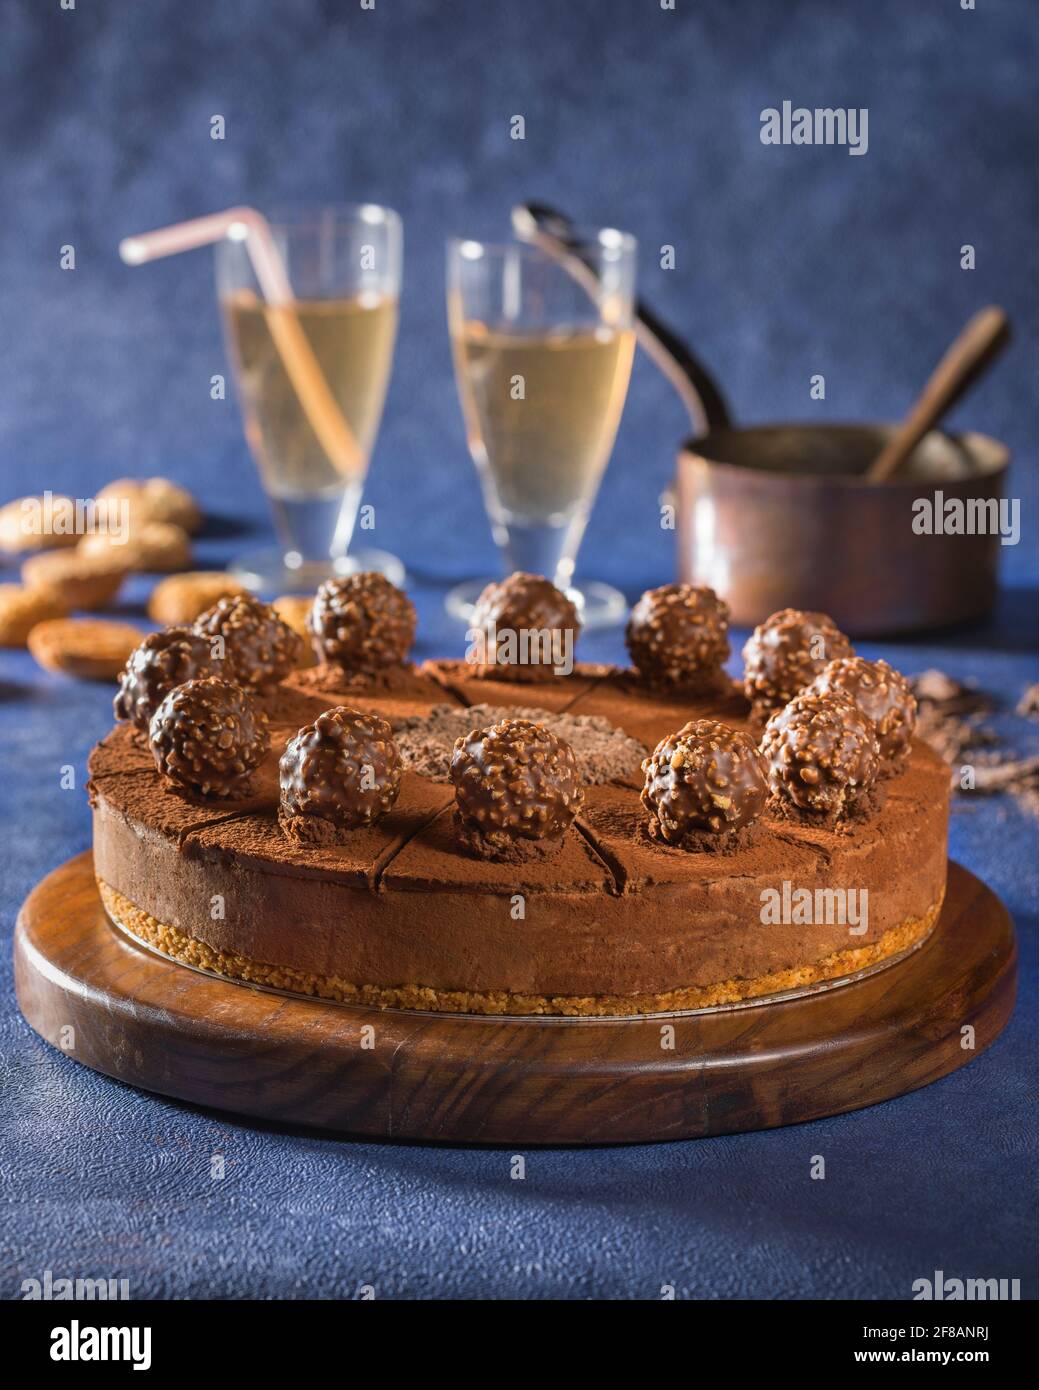 Chocolate truffle torte Stock Photo